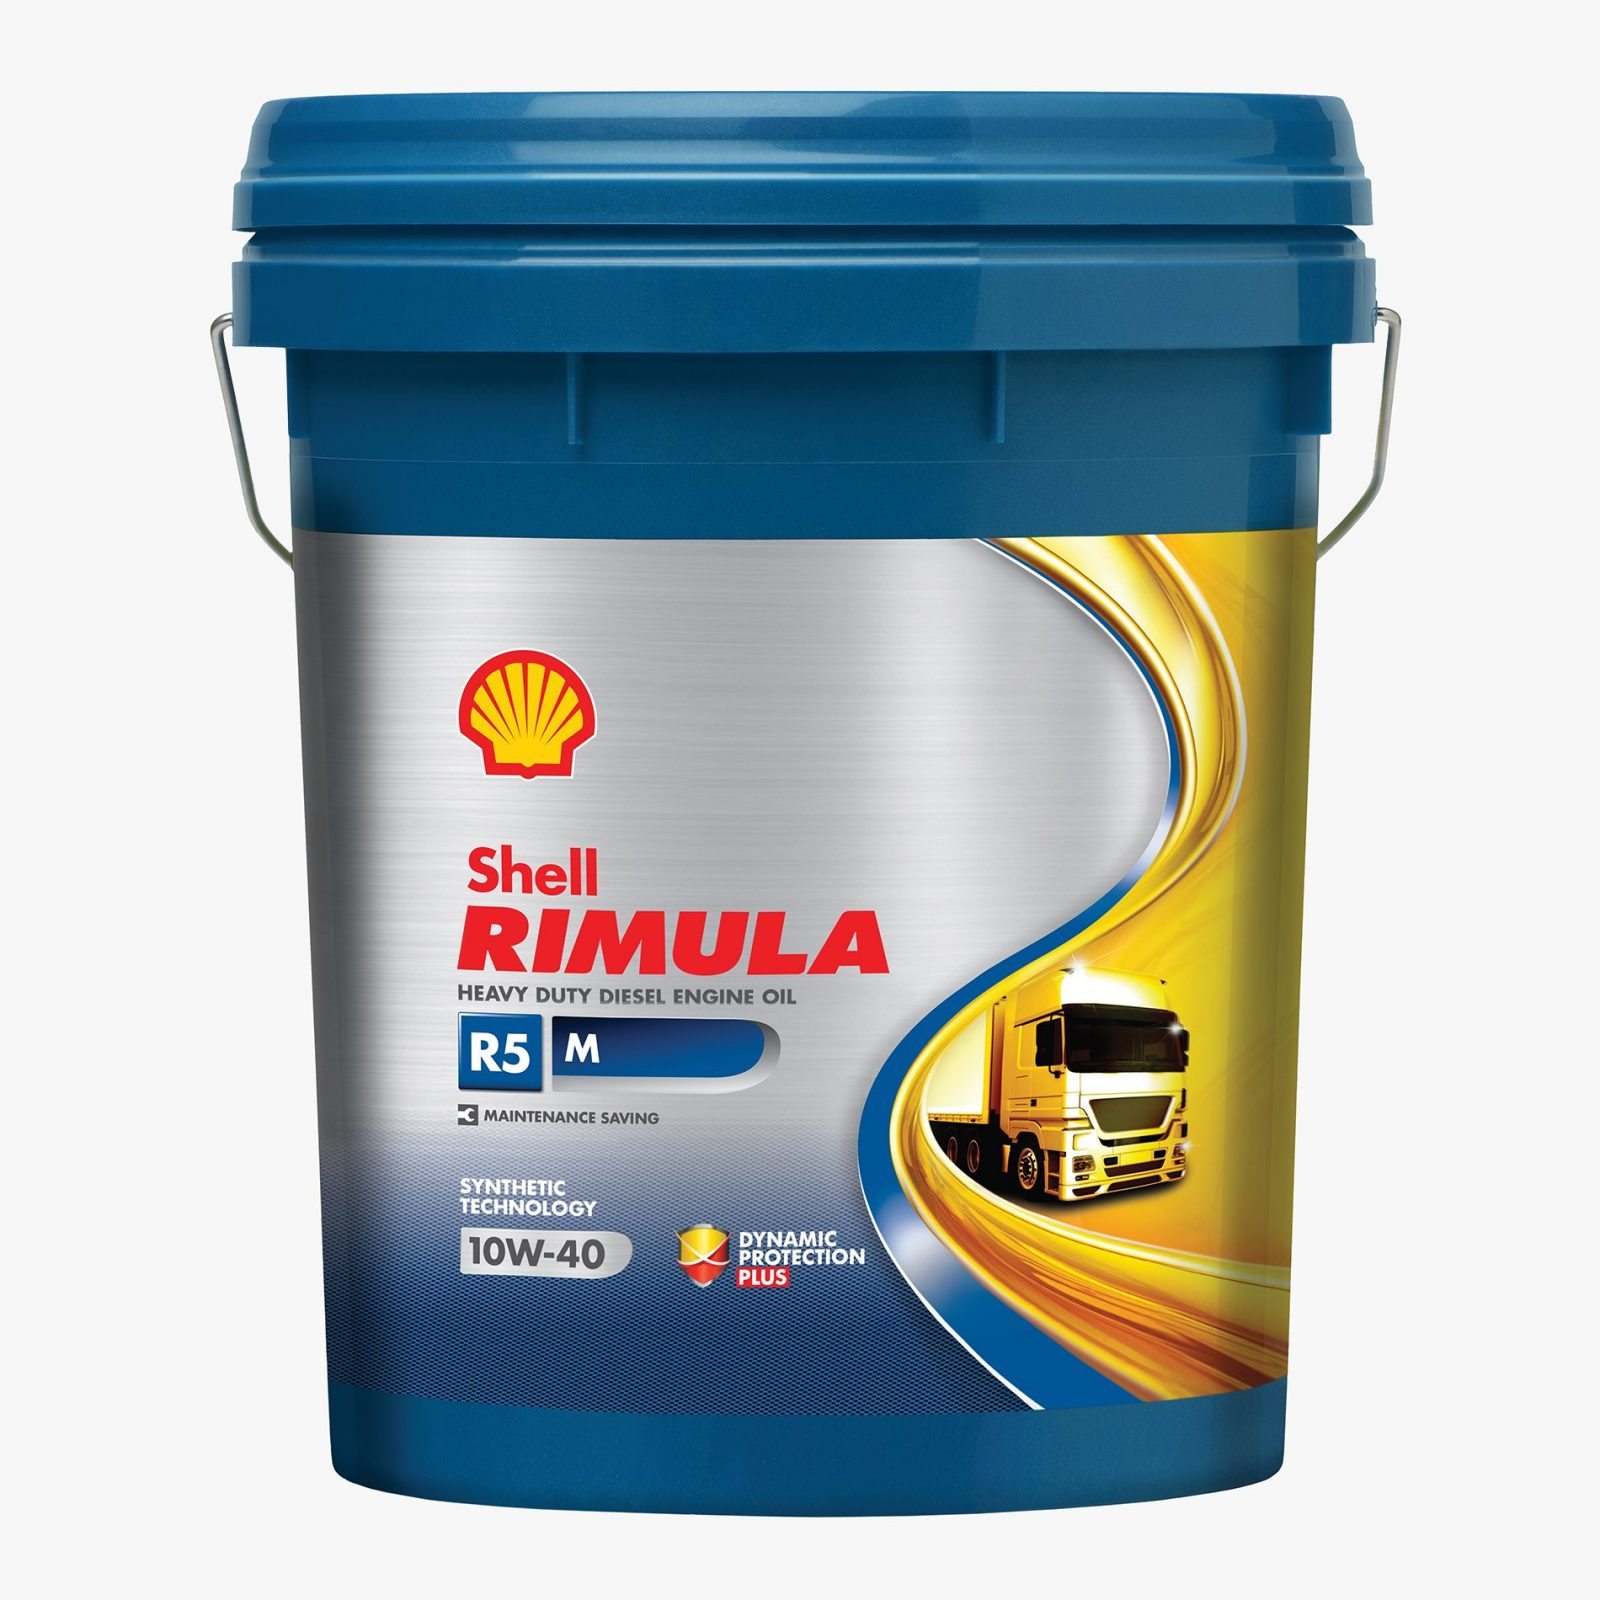 Shell Rimula R5 M